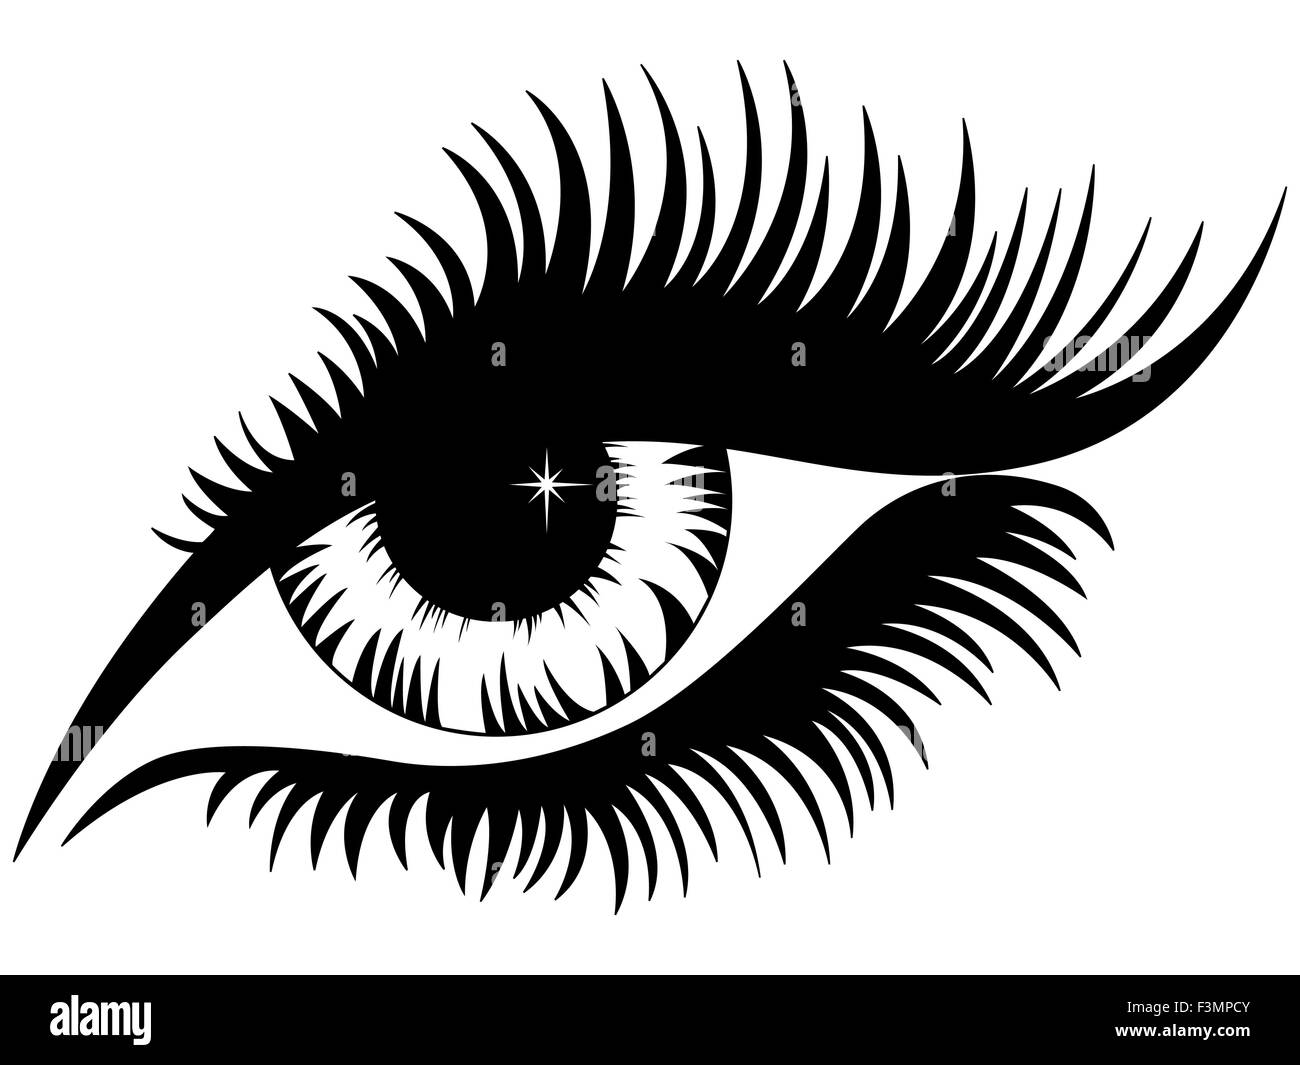 Weibliche Auge schwarze Silhouette isoliert über weiß, Handzeichnung Vektor-illustration Stock Vektor